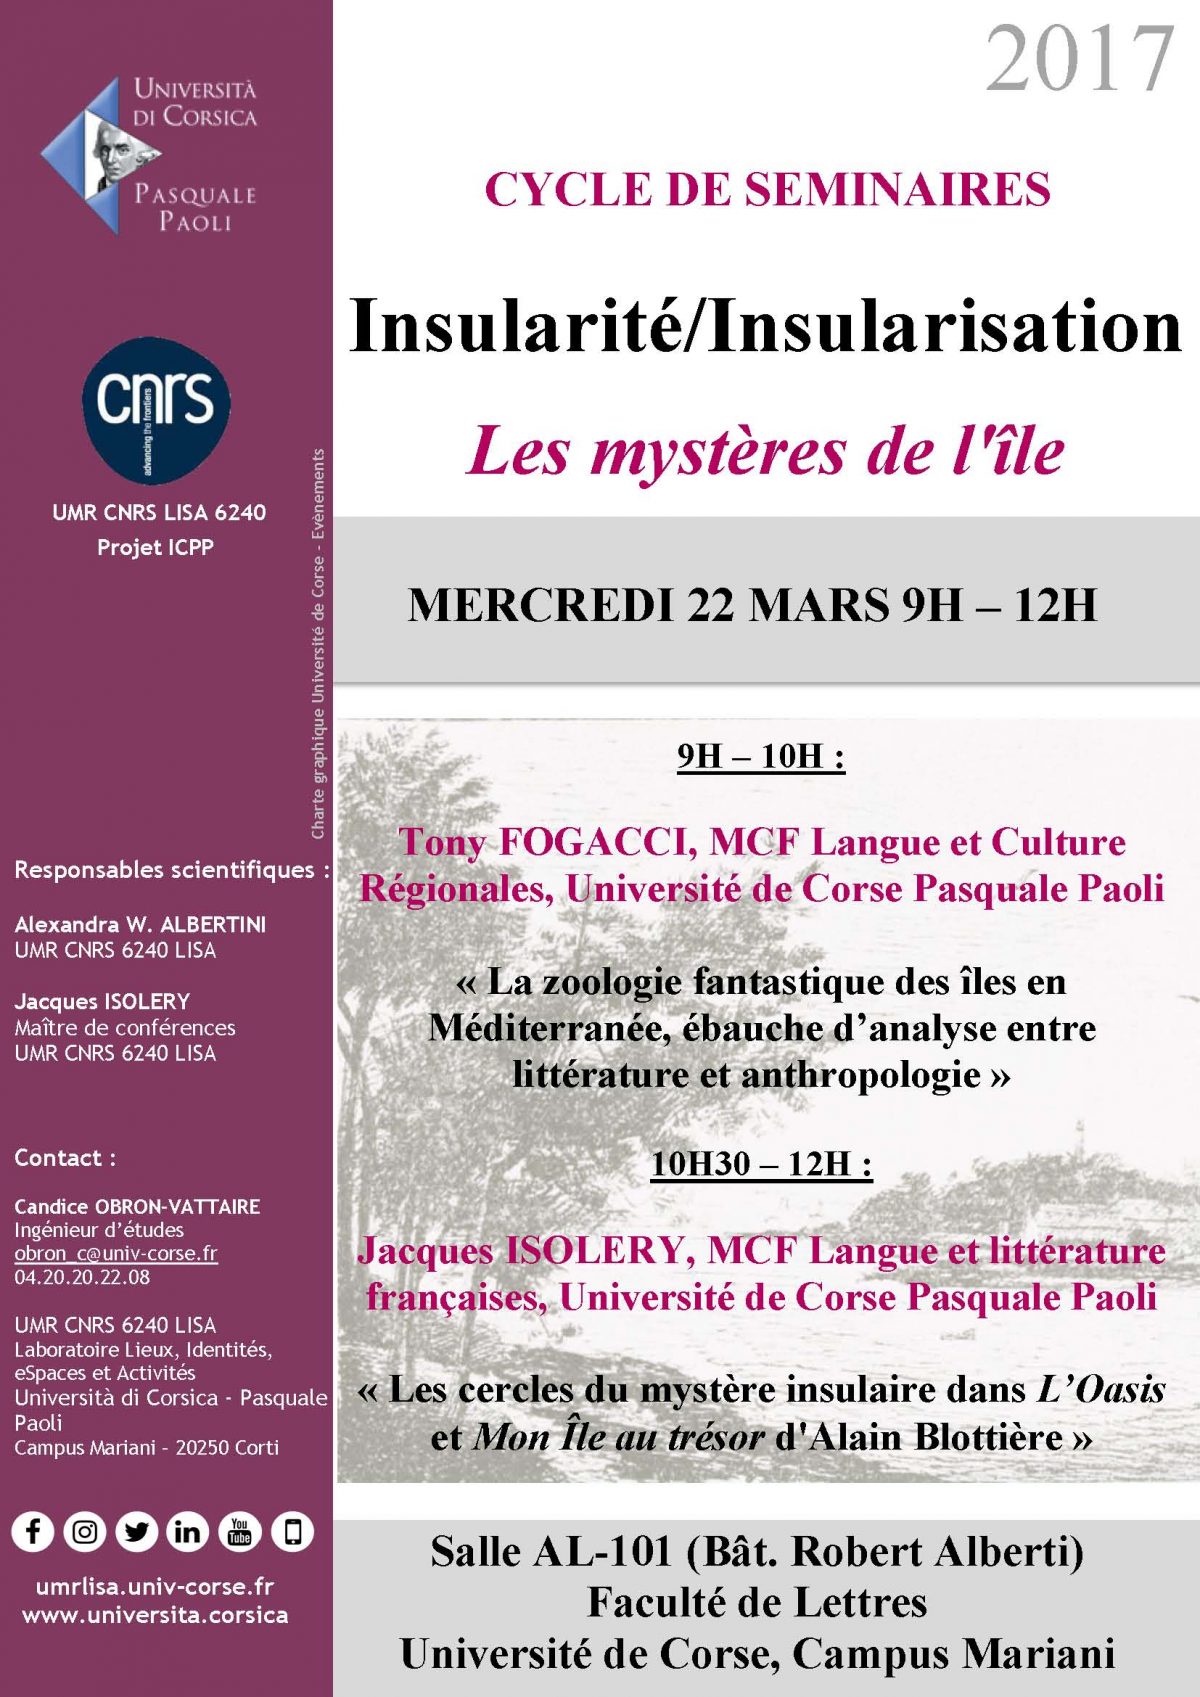 Cycle de séminaires « Insularité/Insularisation : Les mystères de l’île »